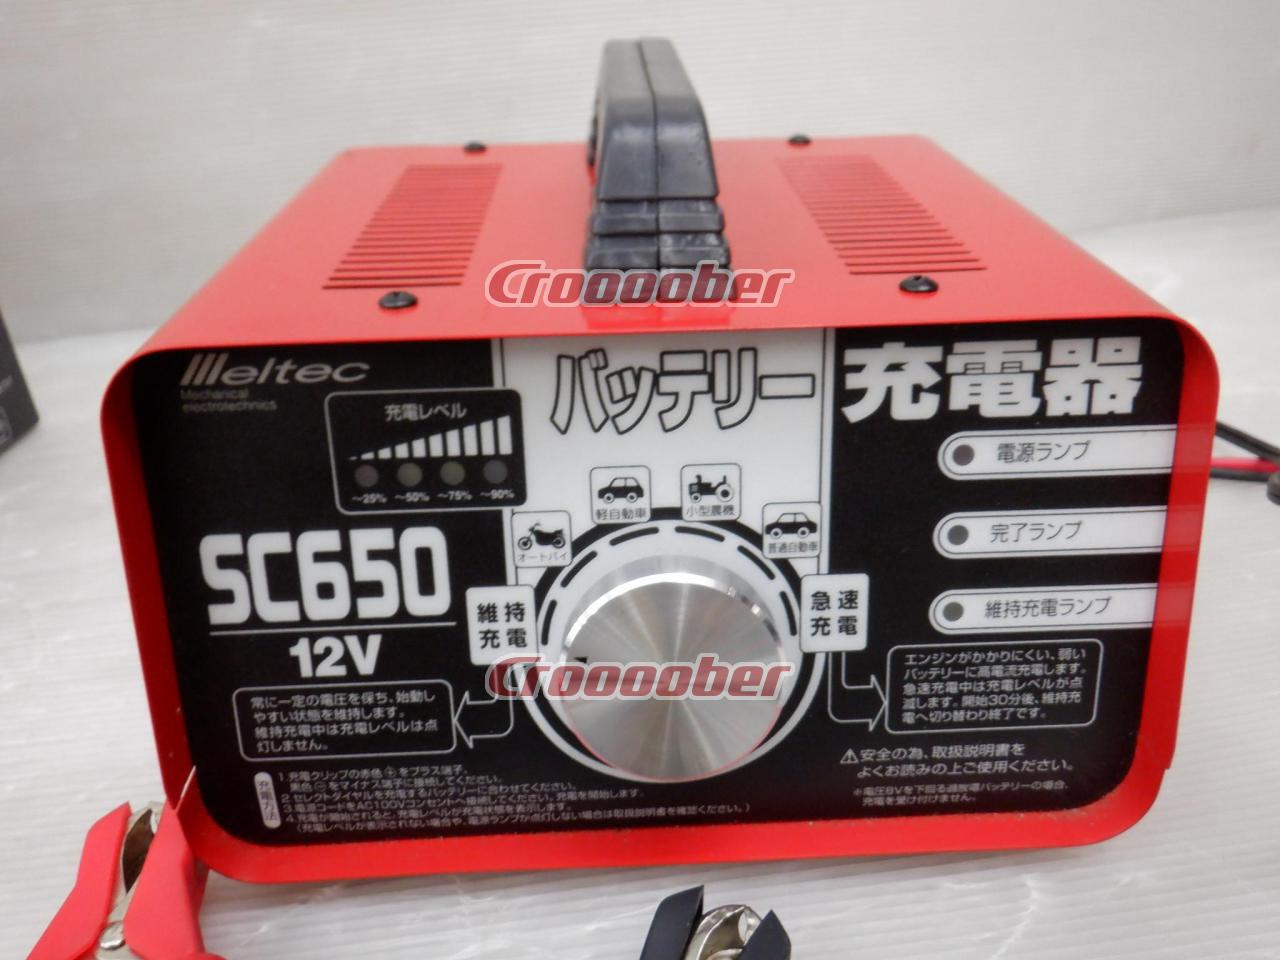 1565円 総合福袋 Meltec 大自工業 バッテリーチャージャー SC-650